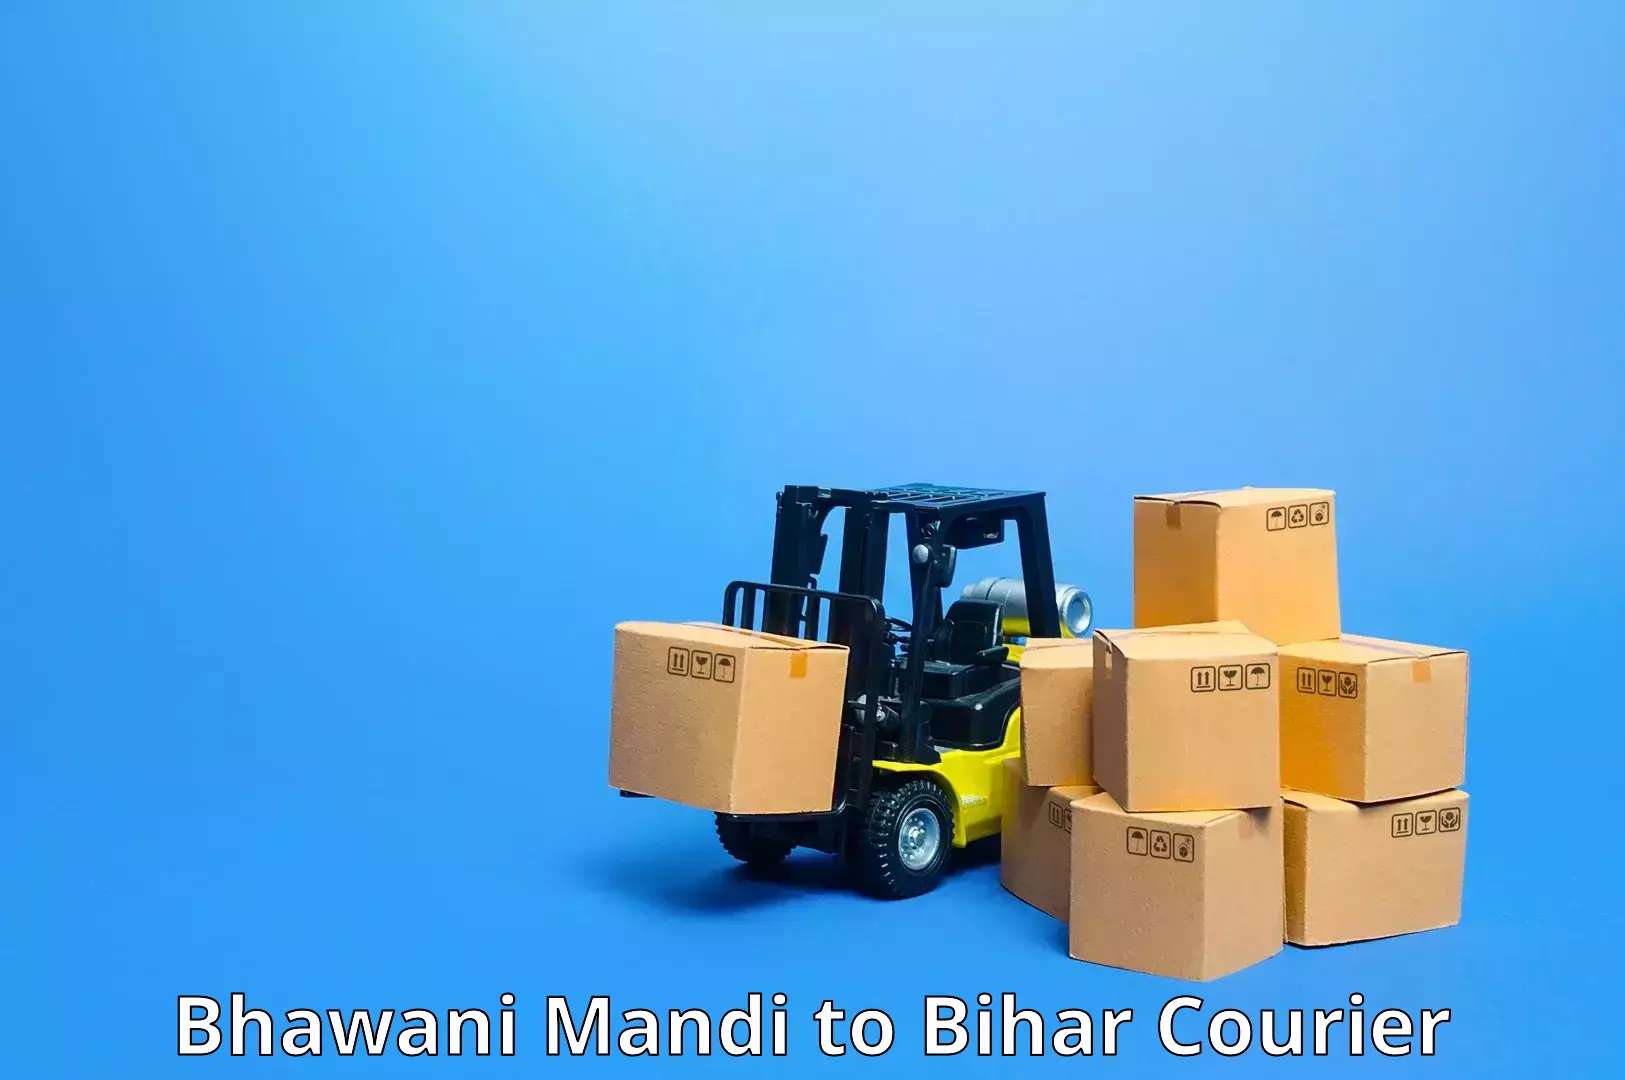 Package forwarding Bhawani Mandi to Bihar